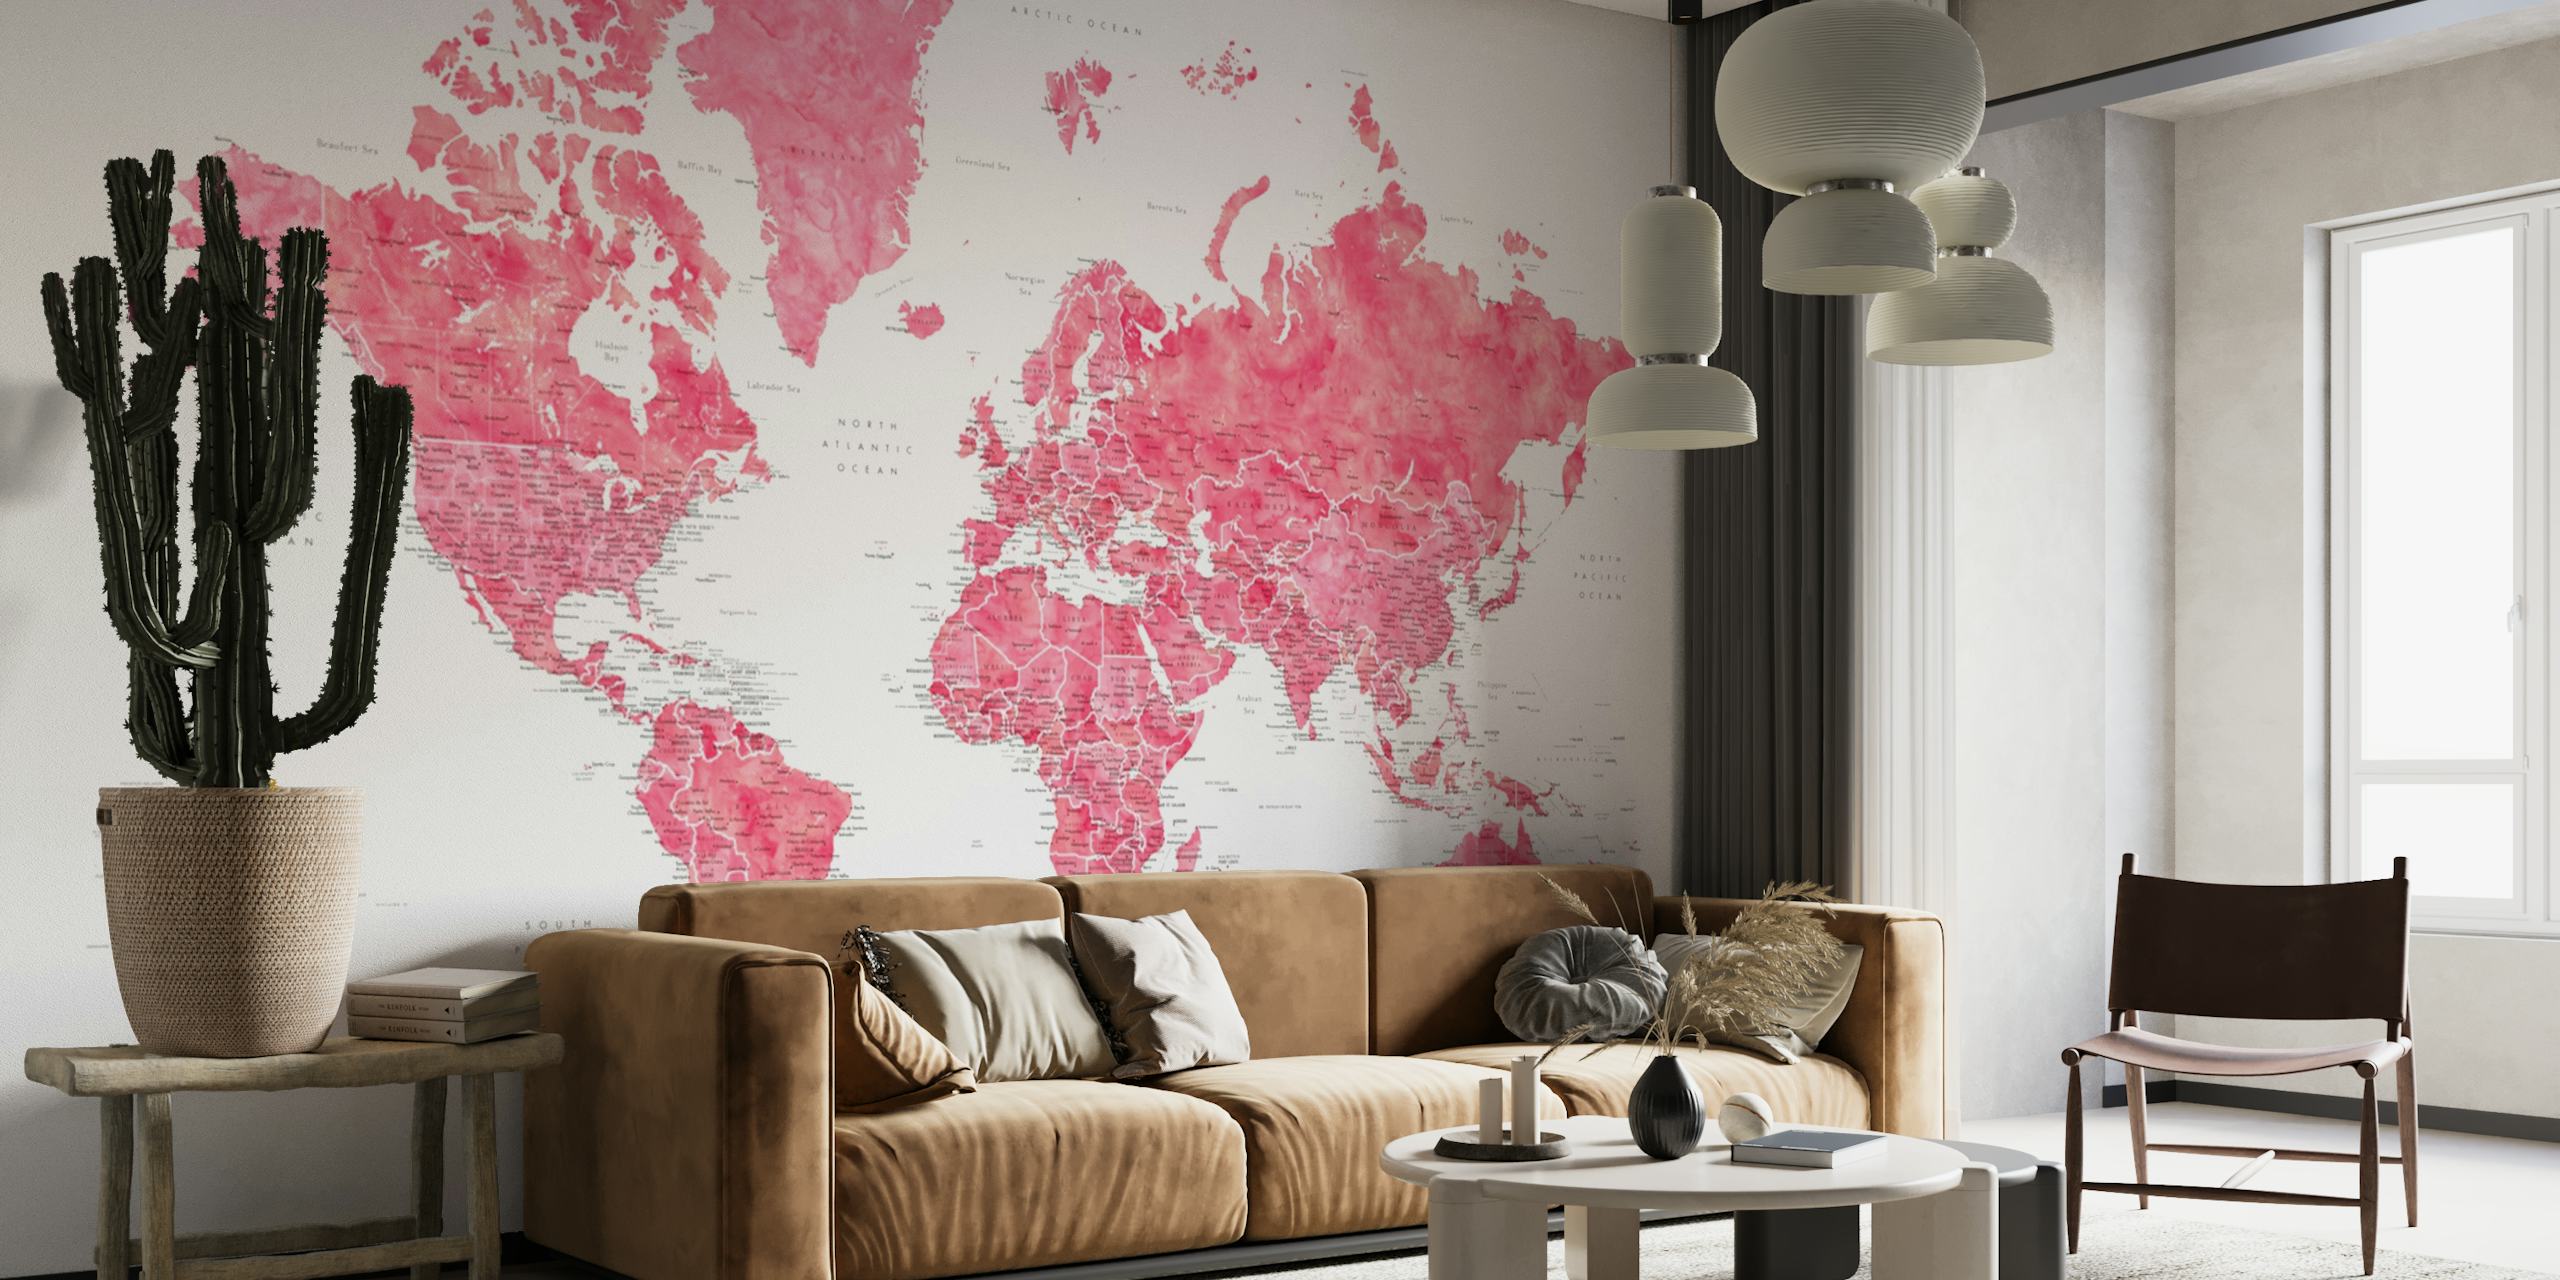 Mural de pared de Wanda con el mapa mundial detallado que presenta intrincados detalles geográficos